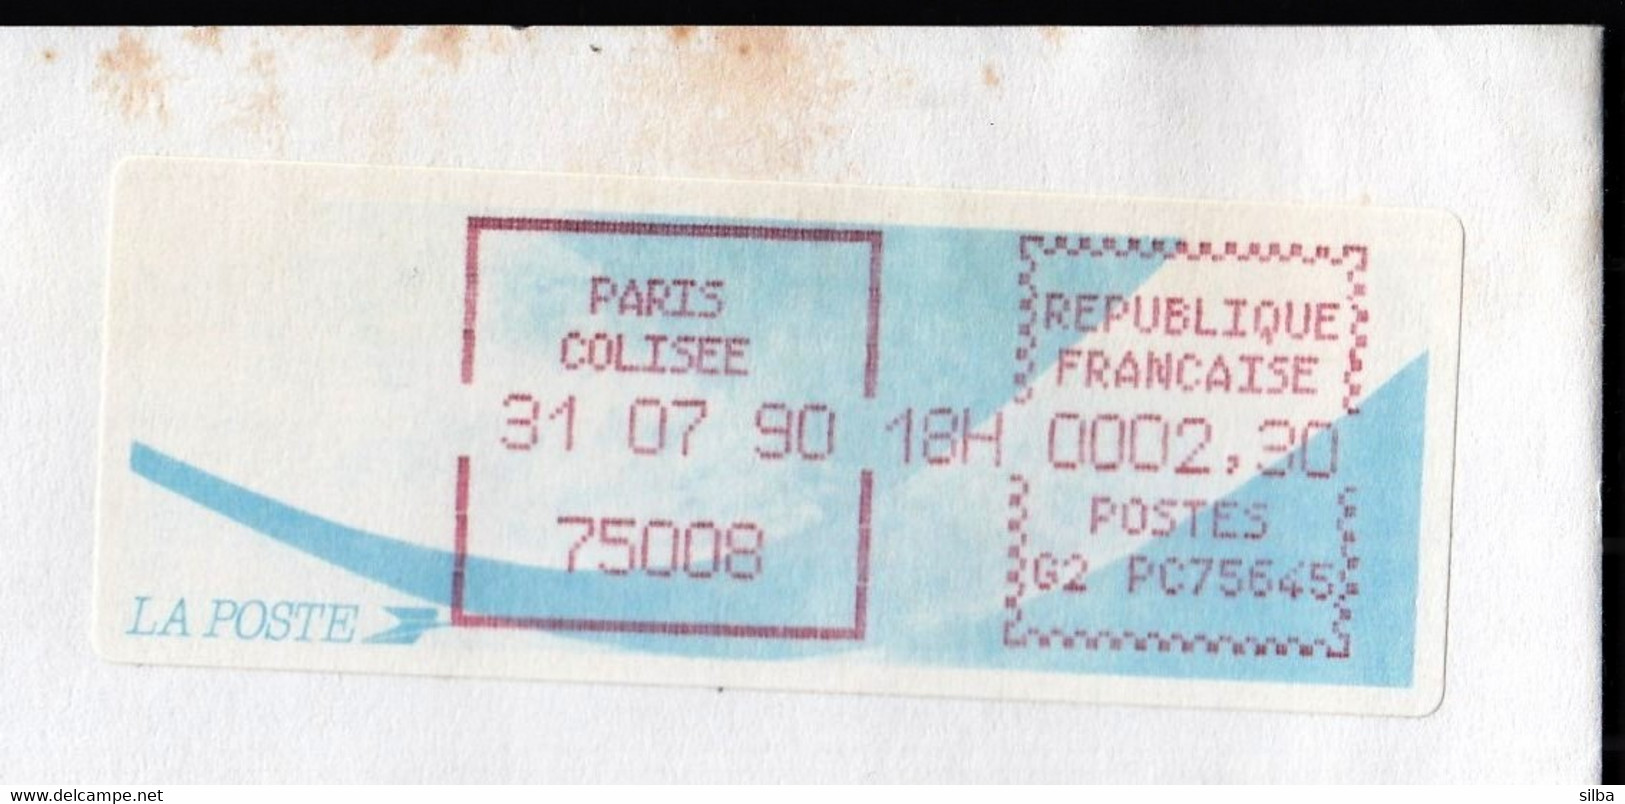 France 1990 / Paris Colisee / Franking Label / Machine Stamp, Automat / Franking Label - 1990 Type « Oiseaux De Jubert »